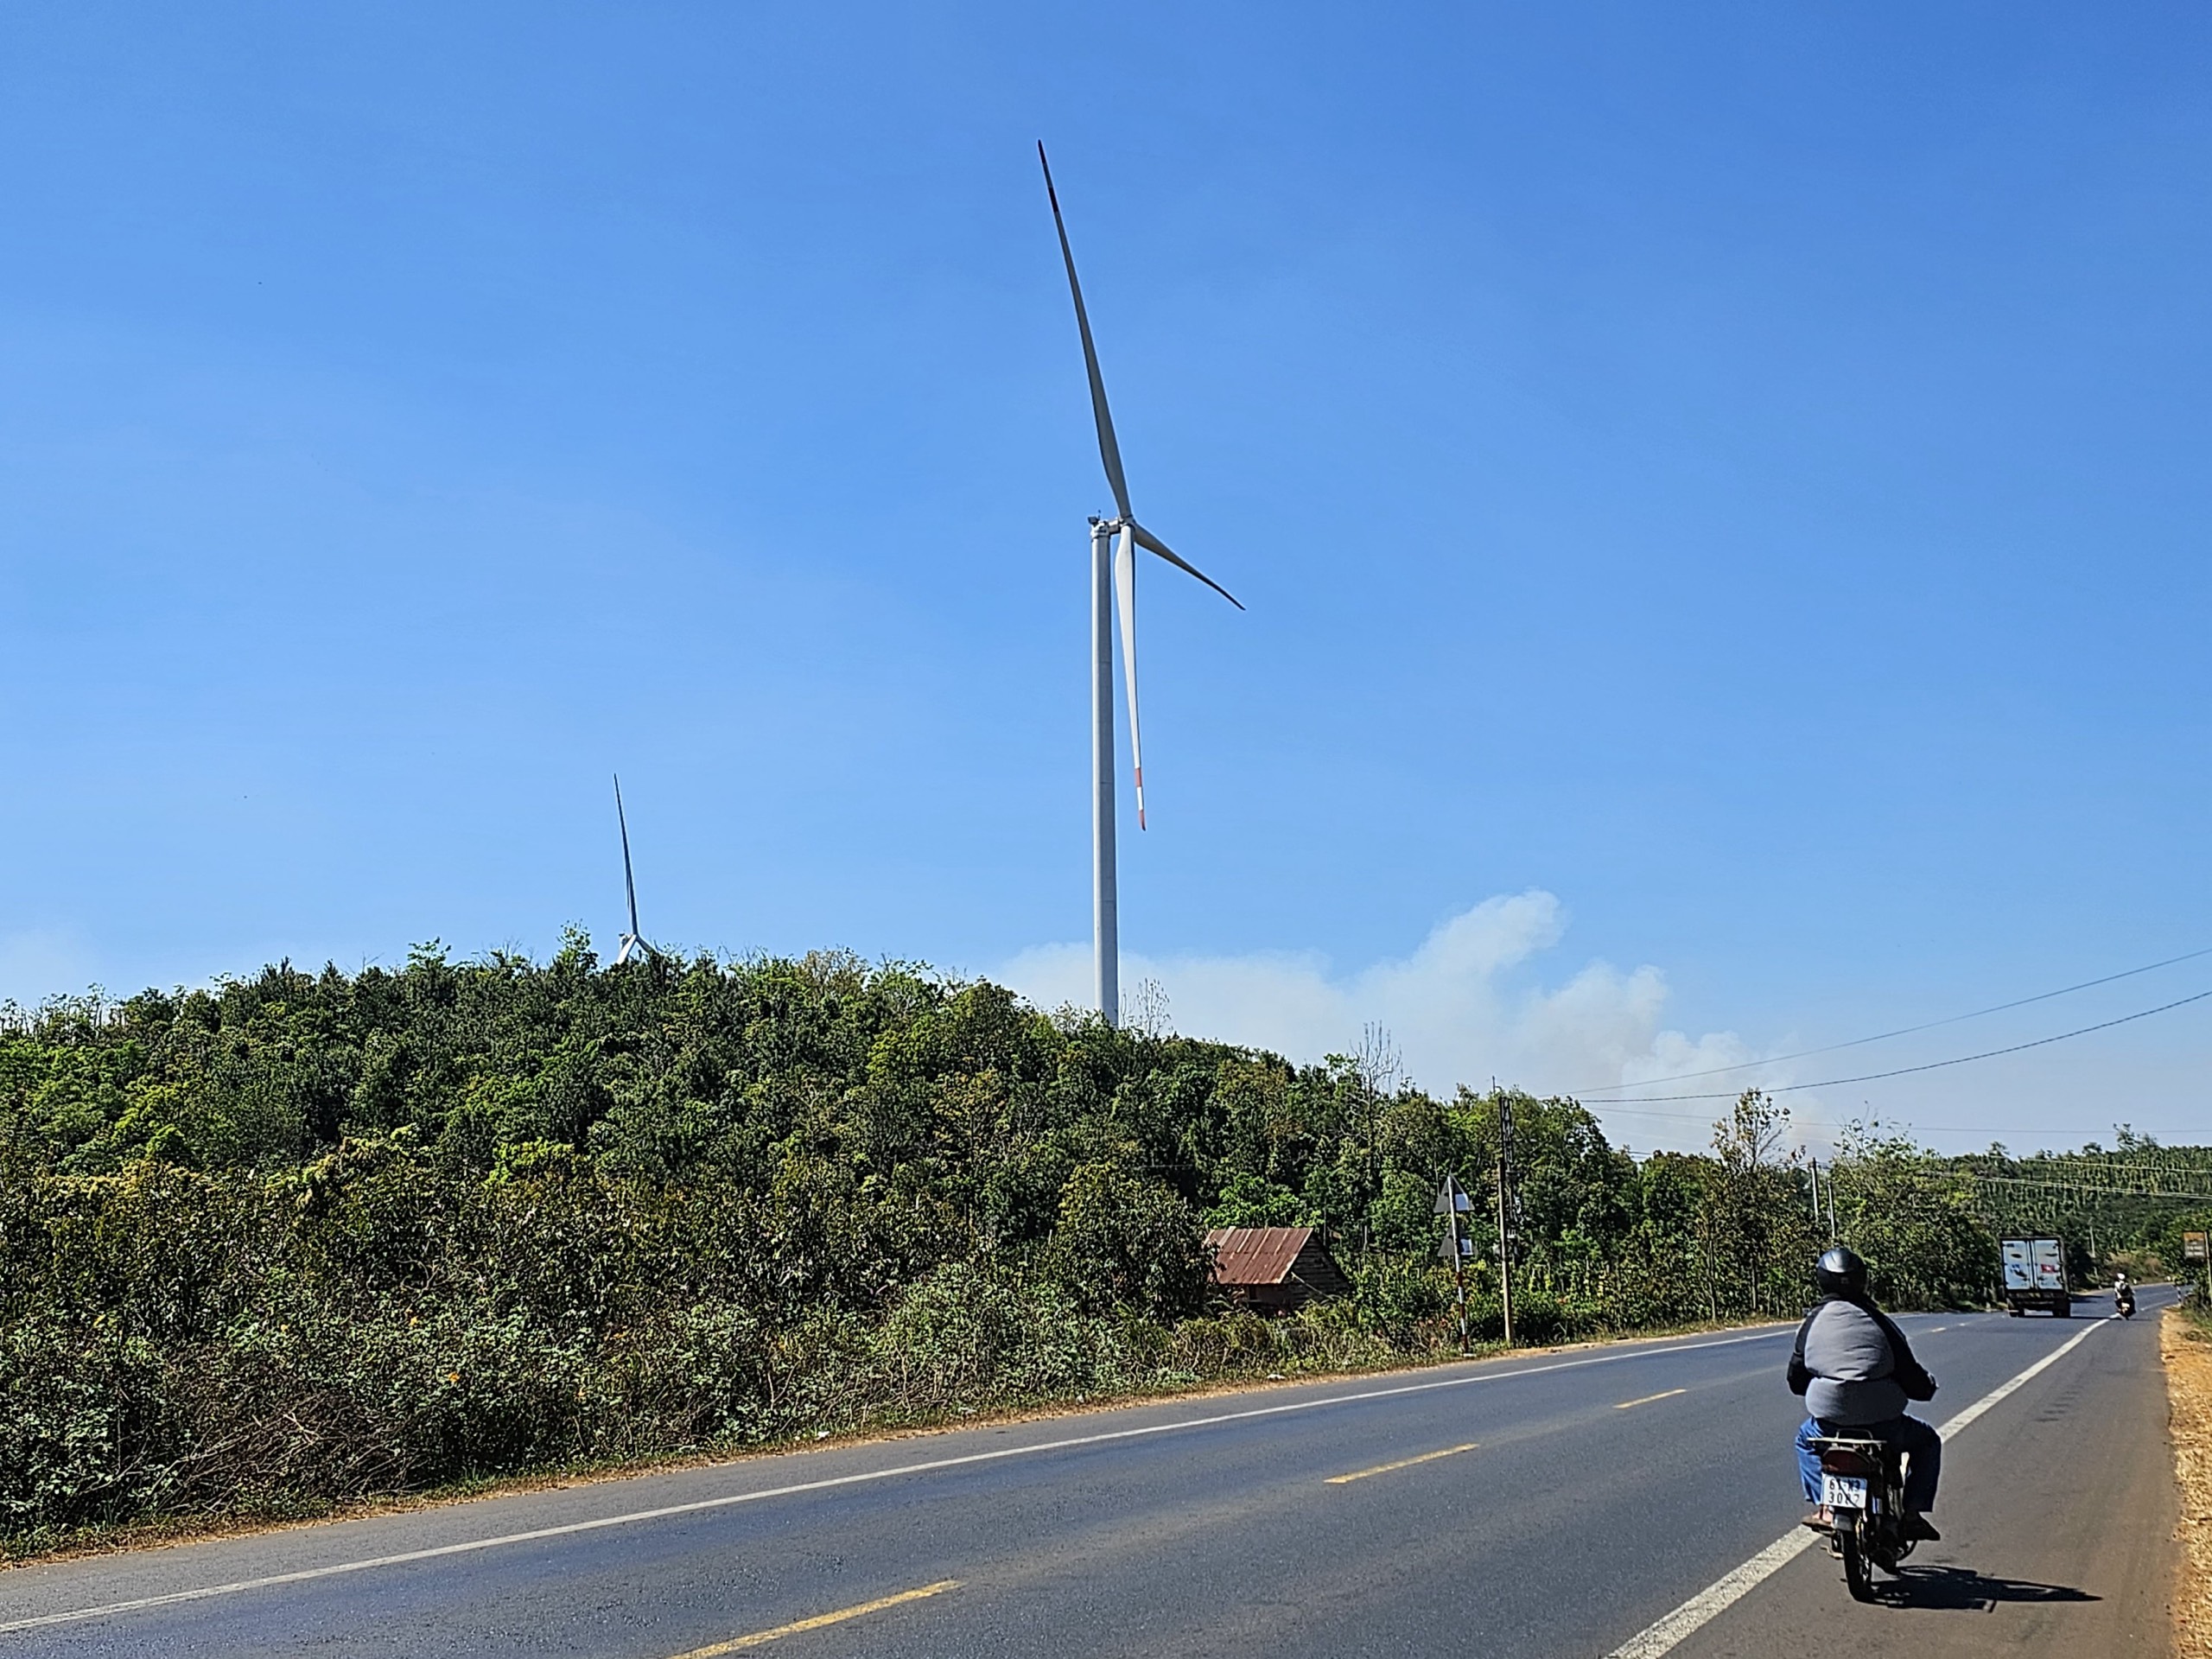 Uỷ ban kiểm tra Trung ương yêu cầu Đắk Nông cung cấp hồ sơ các dự án điện gió - Ảnh 2.